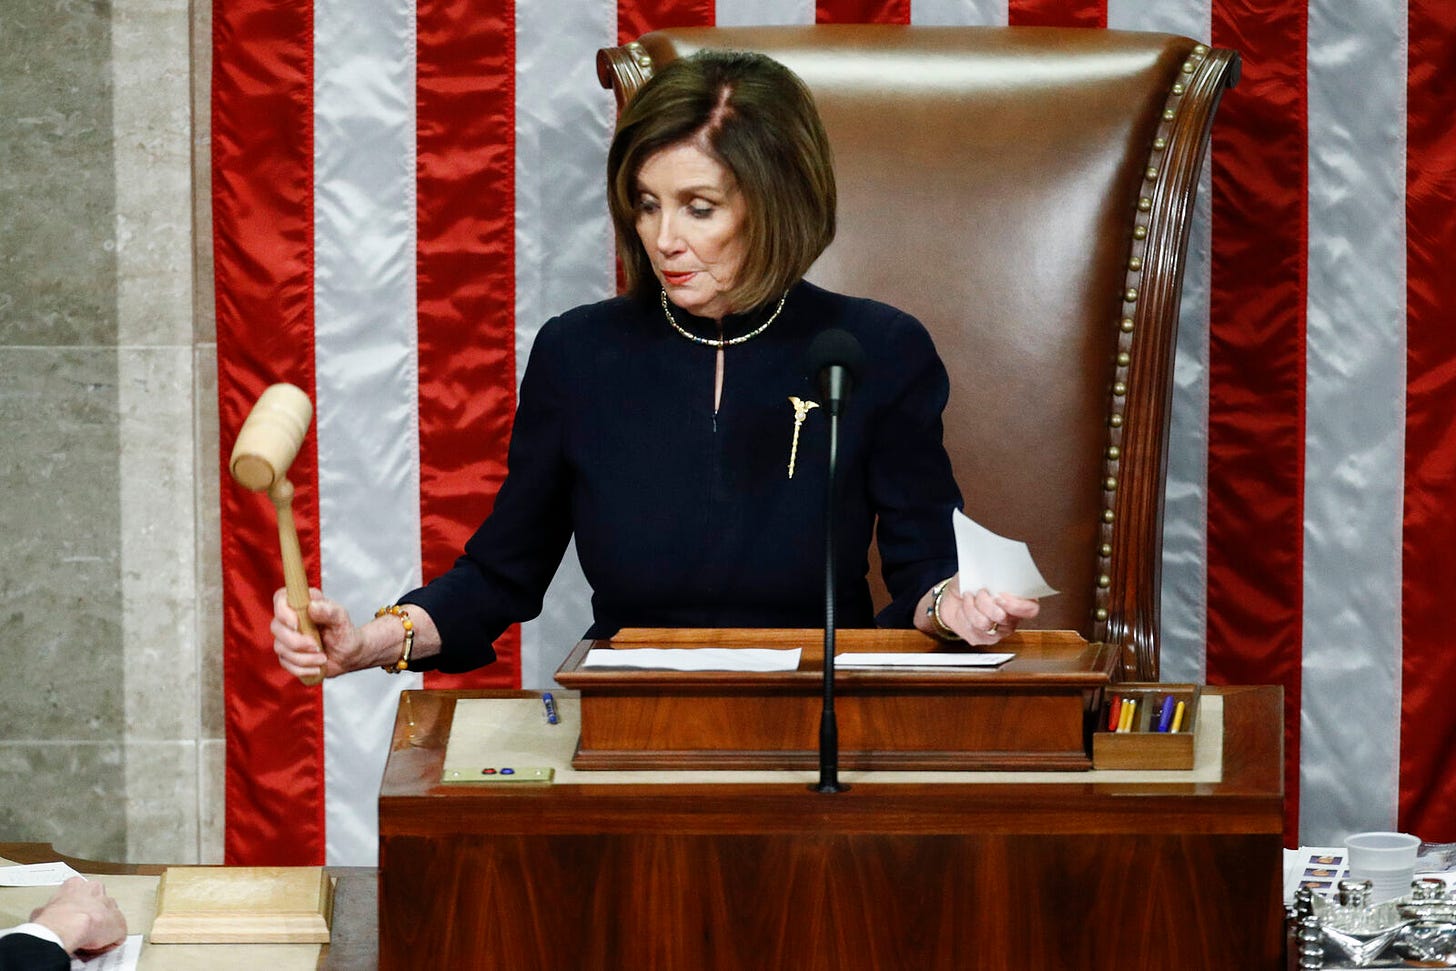 Nancy Pelosi, Speaker of the House, striking down the gavel in the House Chambers.